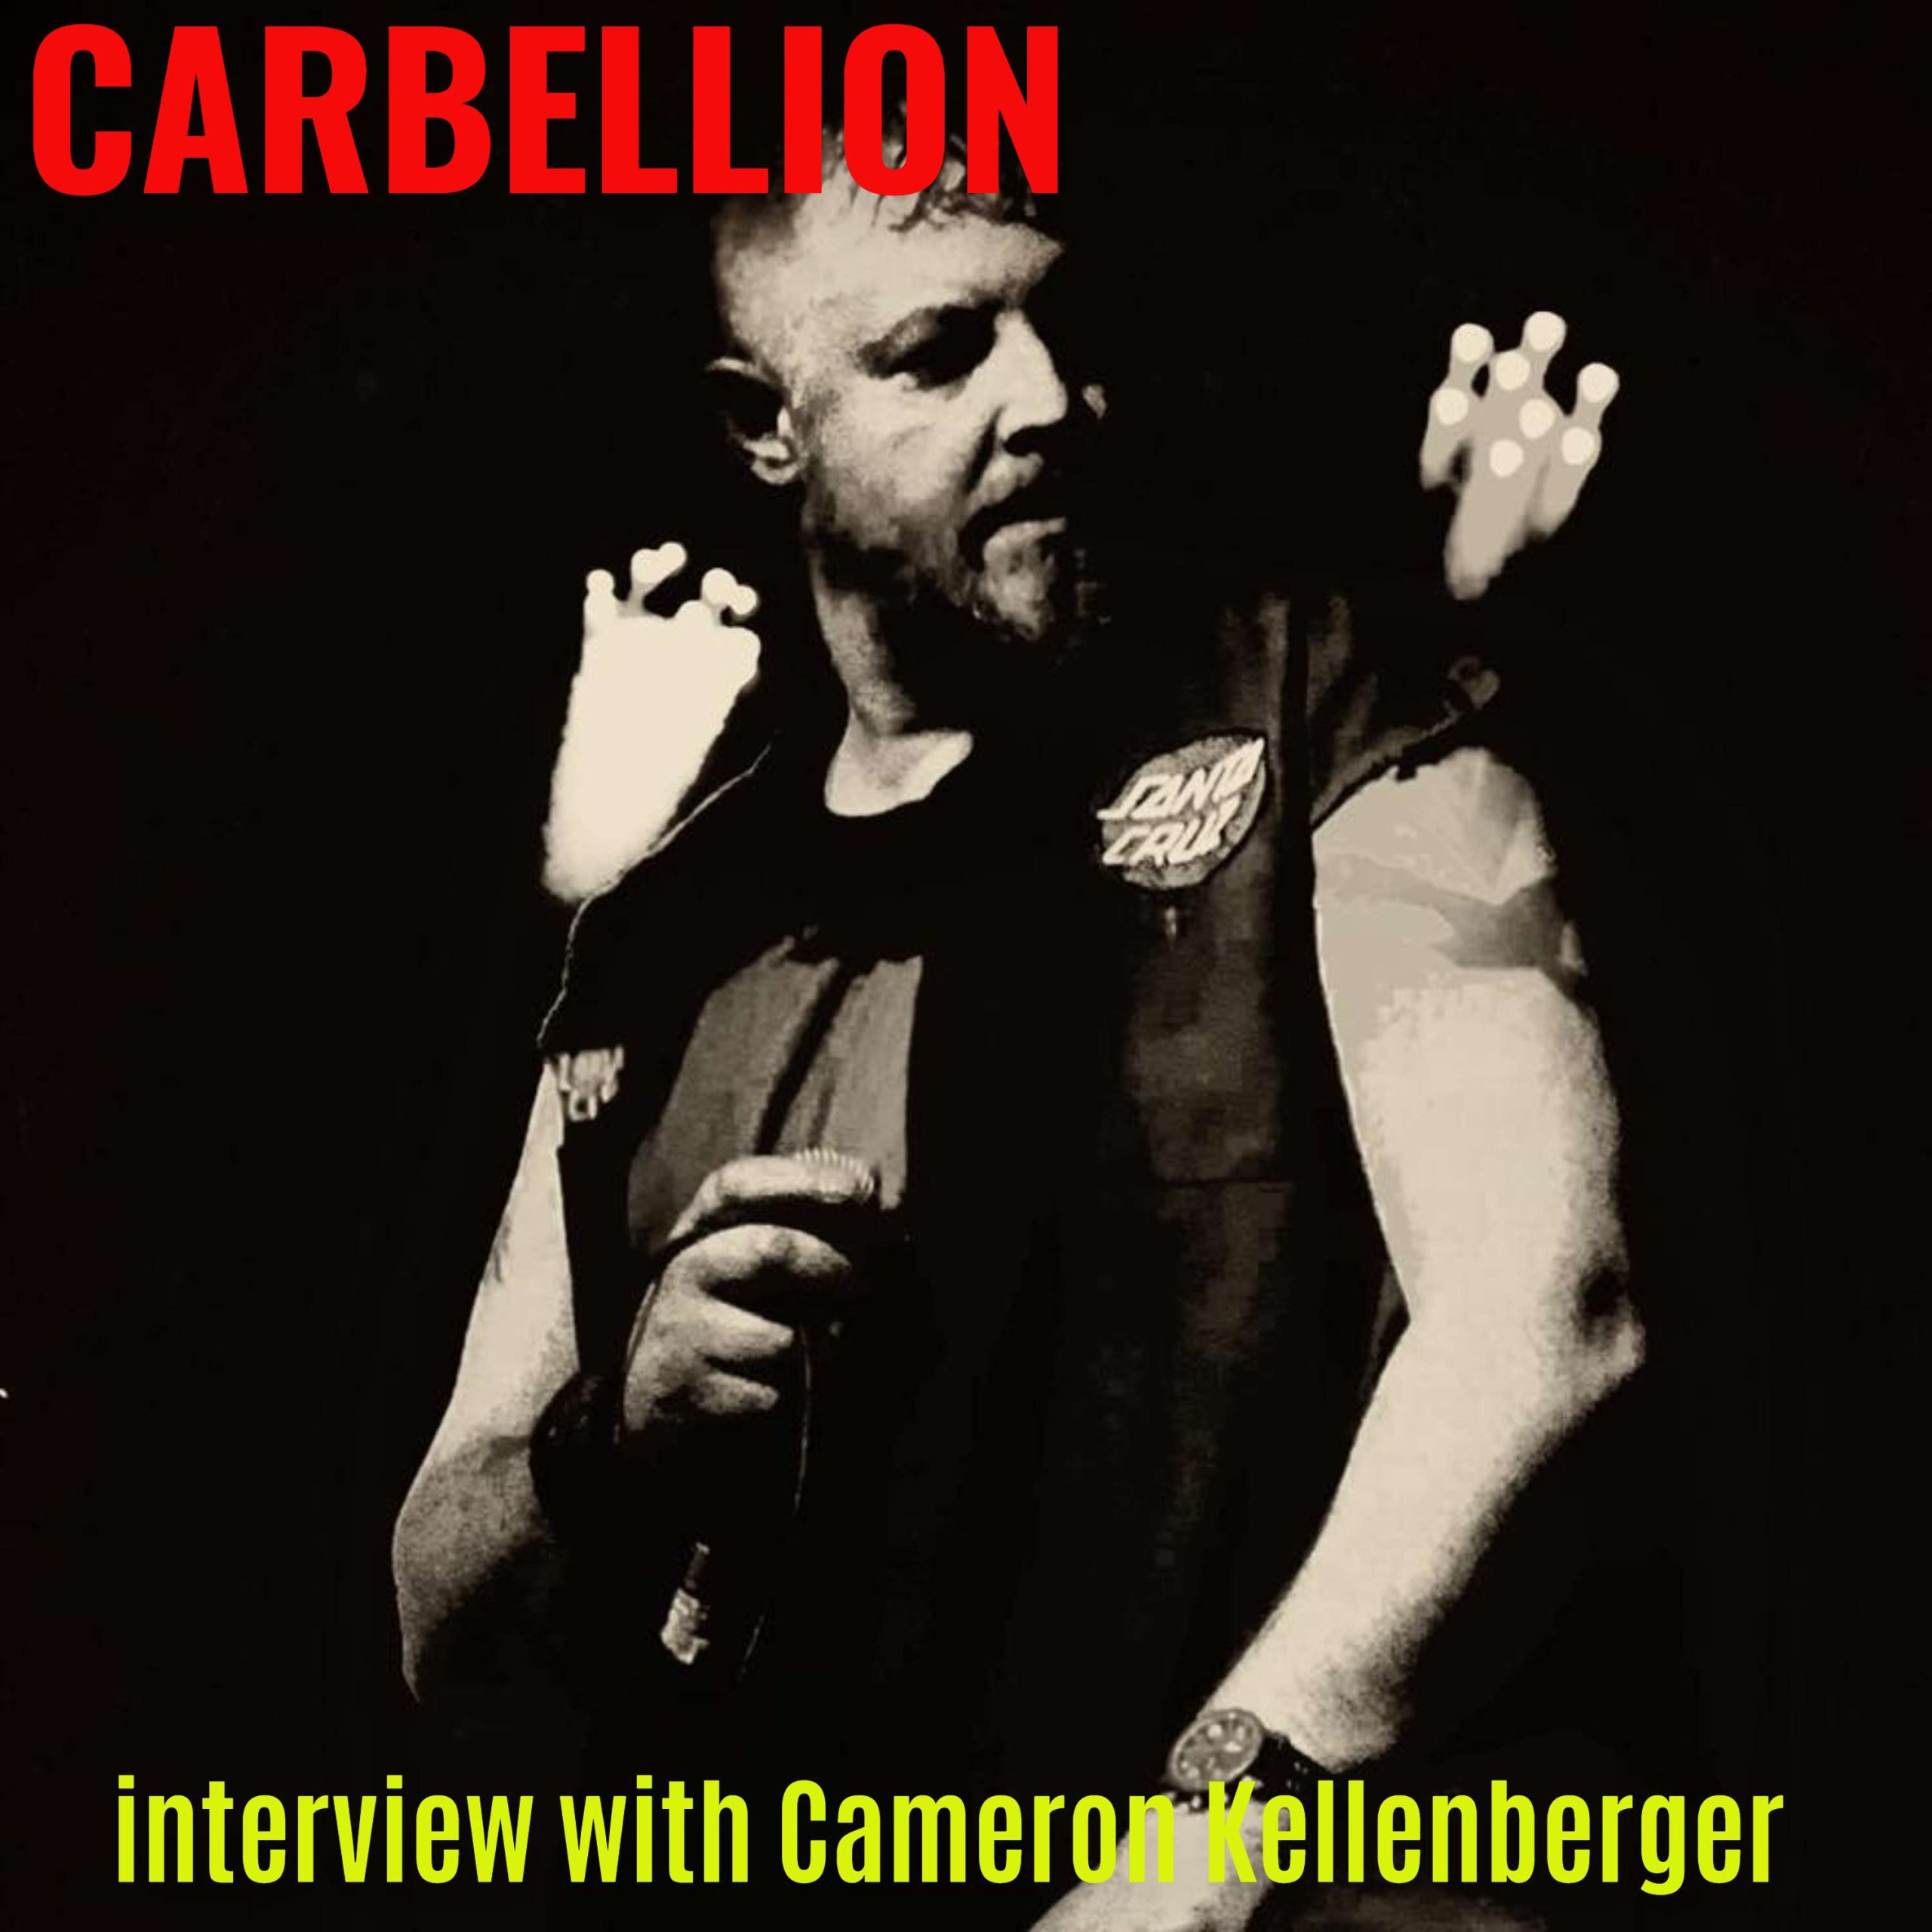 Carbellion singer Cameron Kellenberger